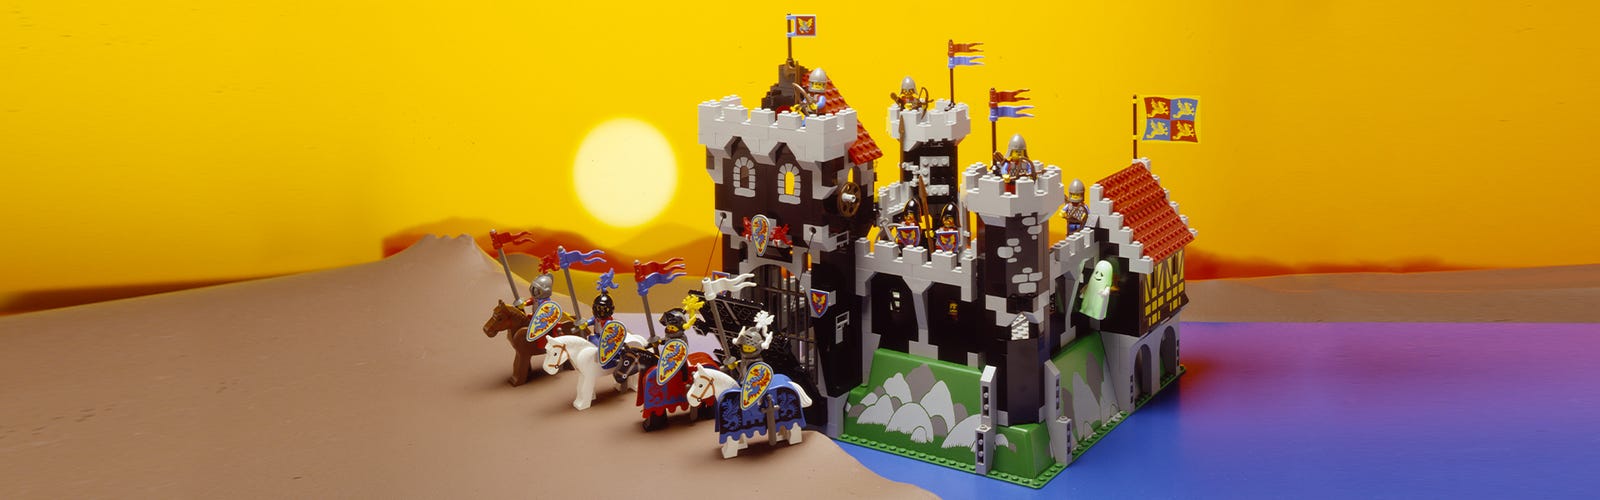 Lego army, Lego projects, Lego design